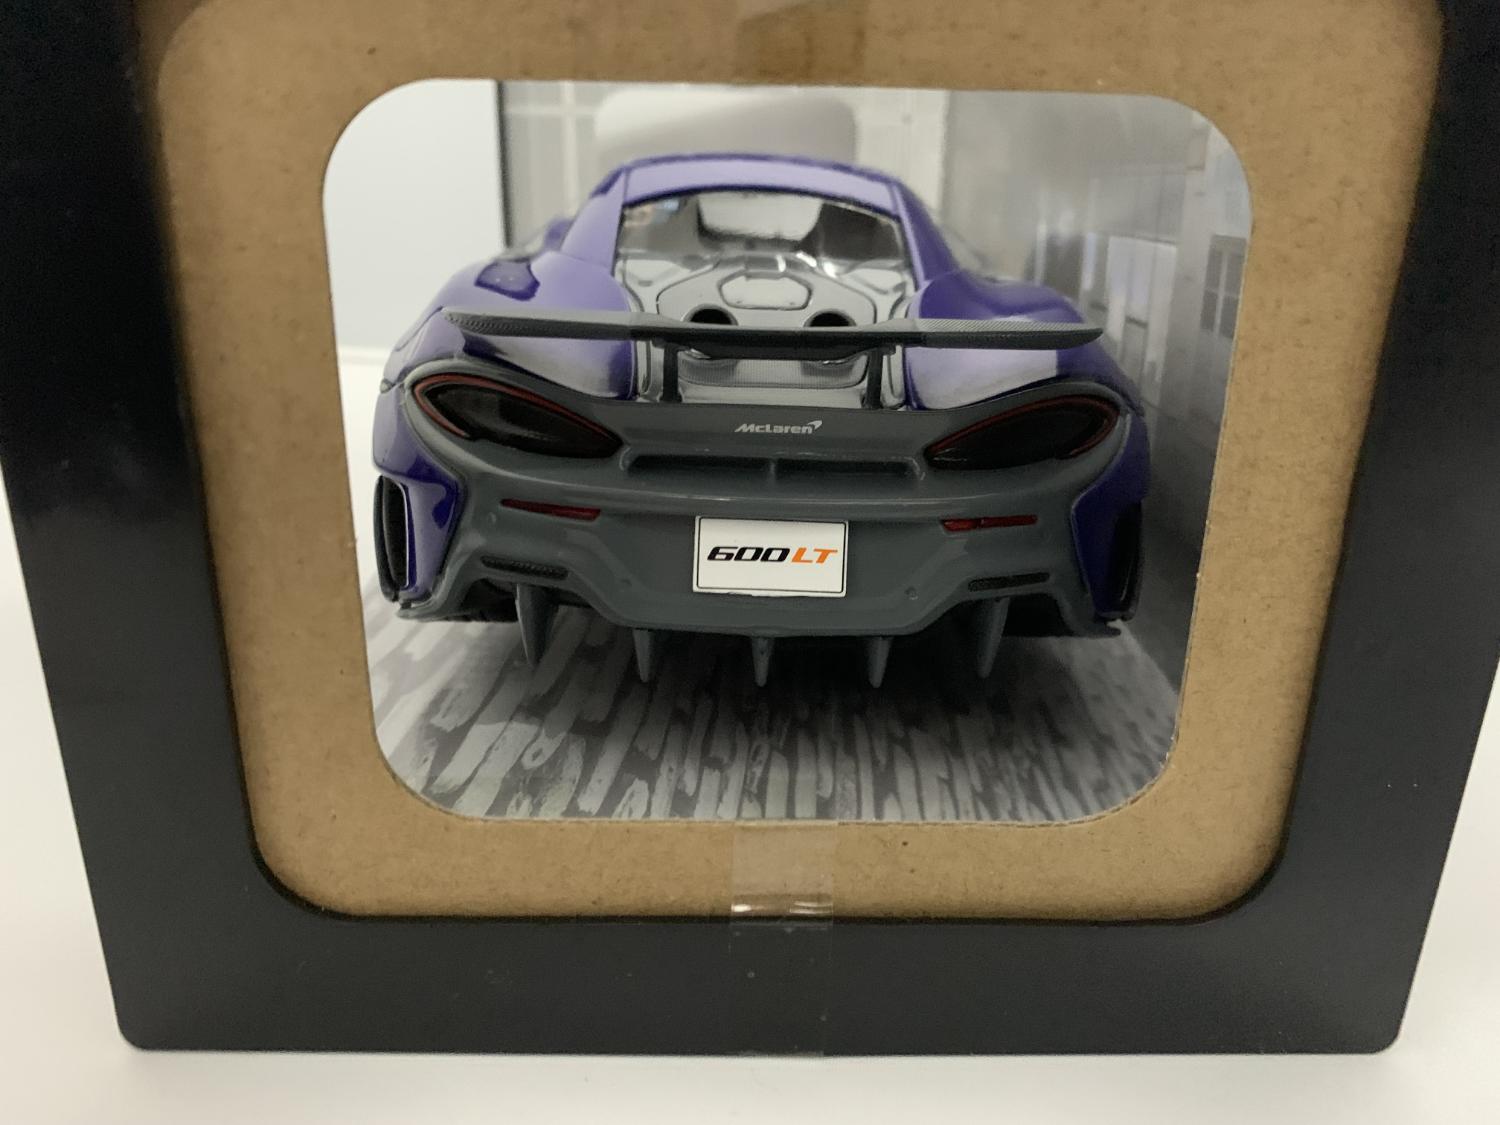 McLaren 600LT 2018 in Lantana Purple 1:18 scale model from Solido